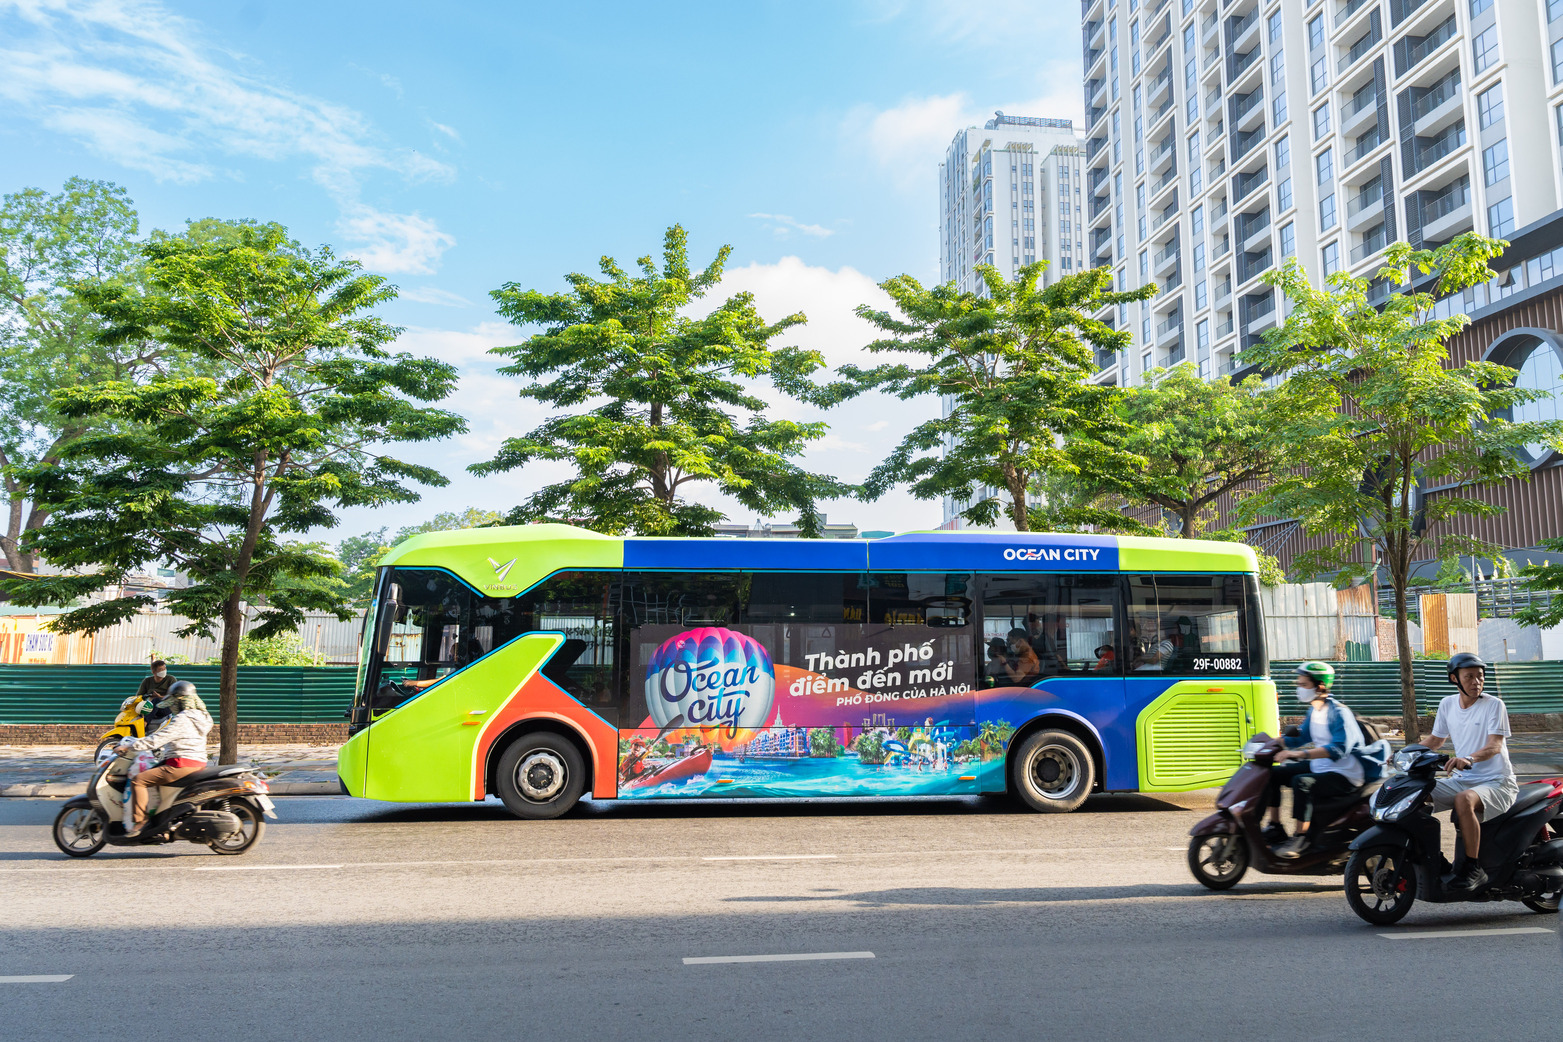 Vinhomes cũng triển khai các tuyến xe bus Ocean City Bus miễn phí để du khách có thể trảip/nghiệm và tham quan các địa điểm nổi bật tại Ocean City.